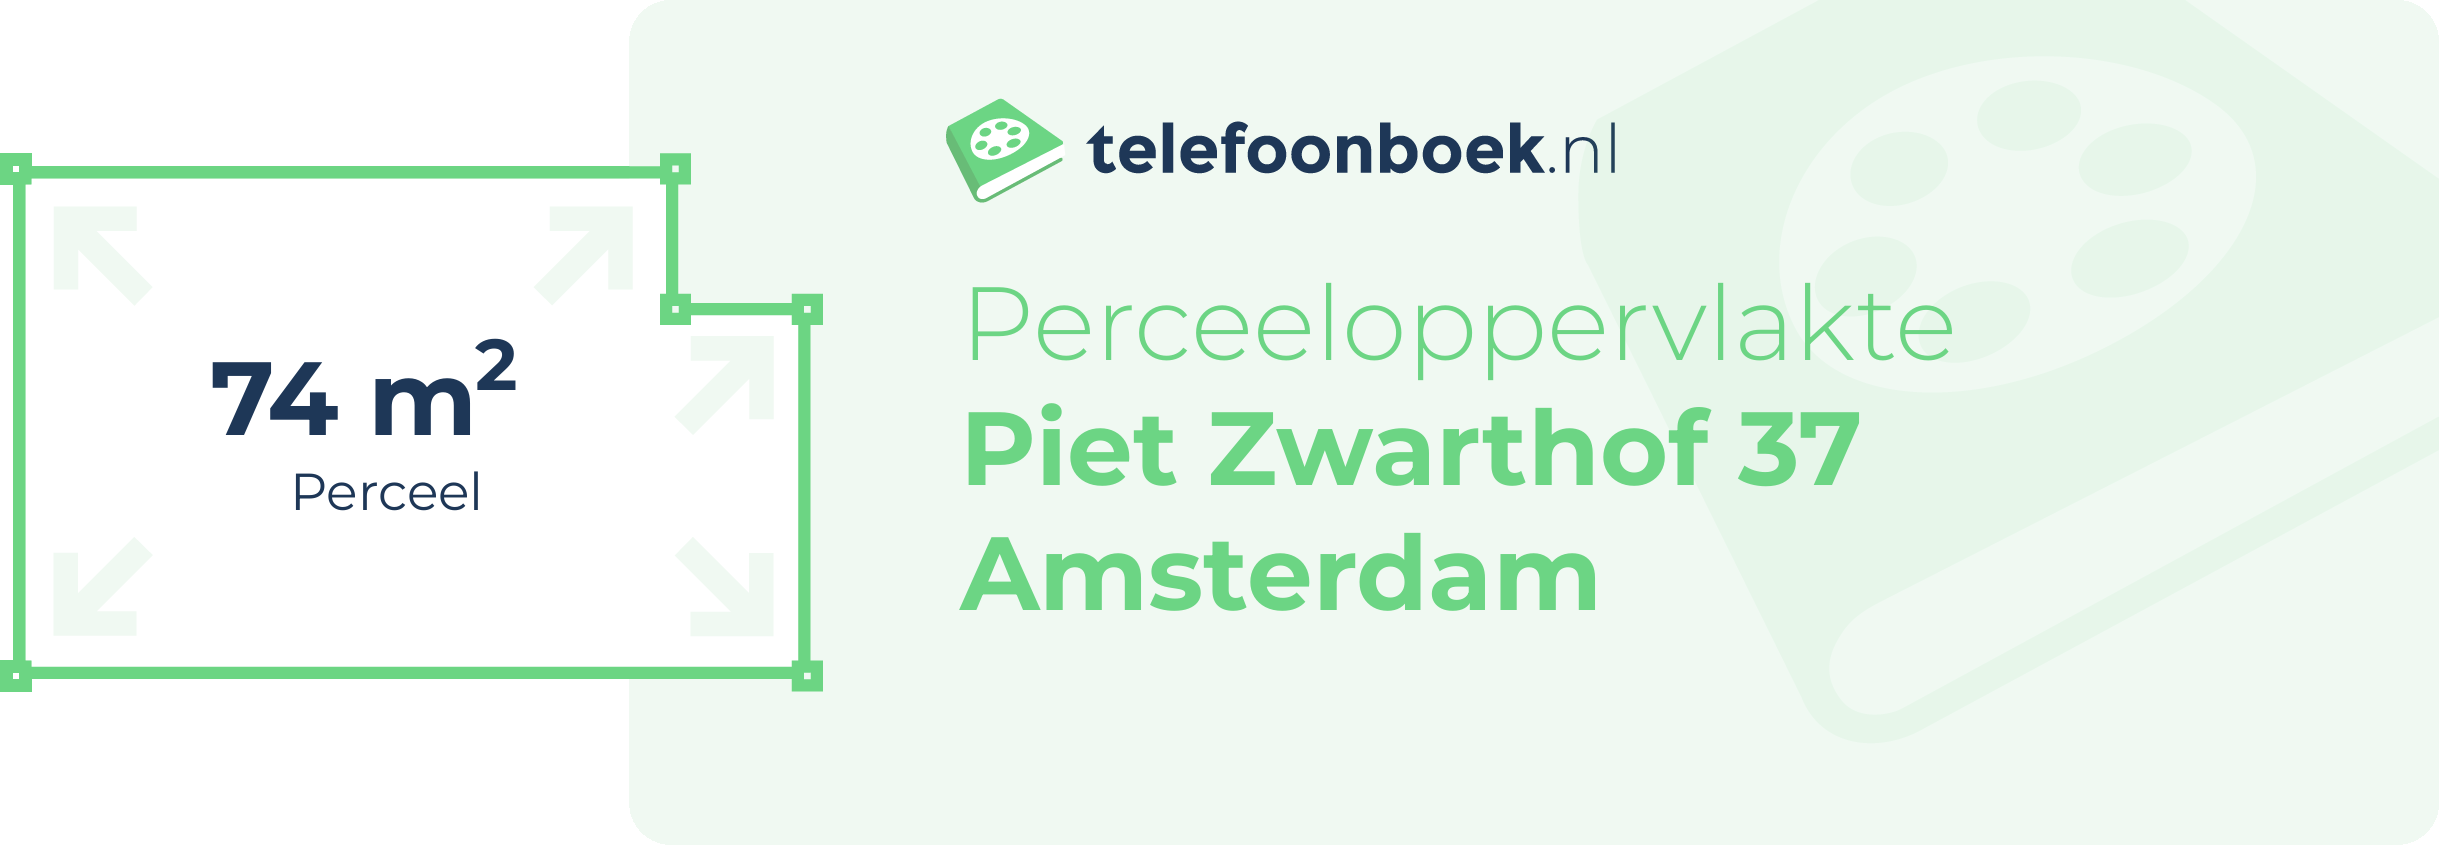 Perceeloppervlakte Piet Zwarthof 37 Amsterdam